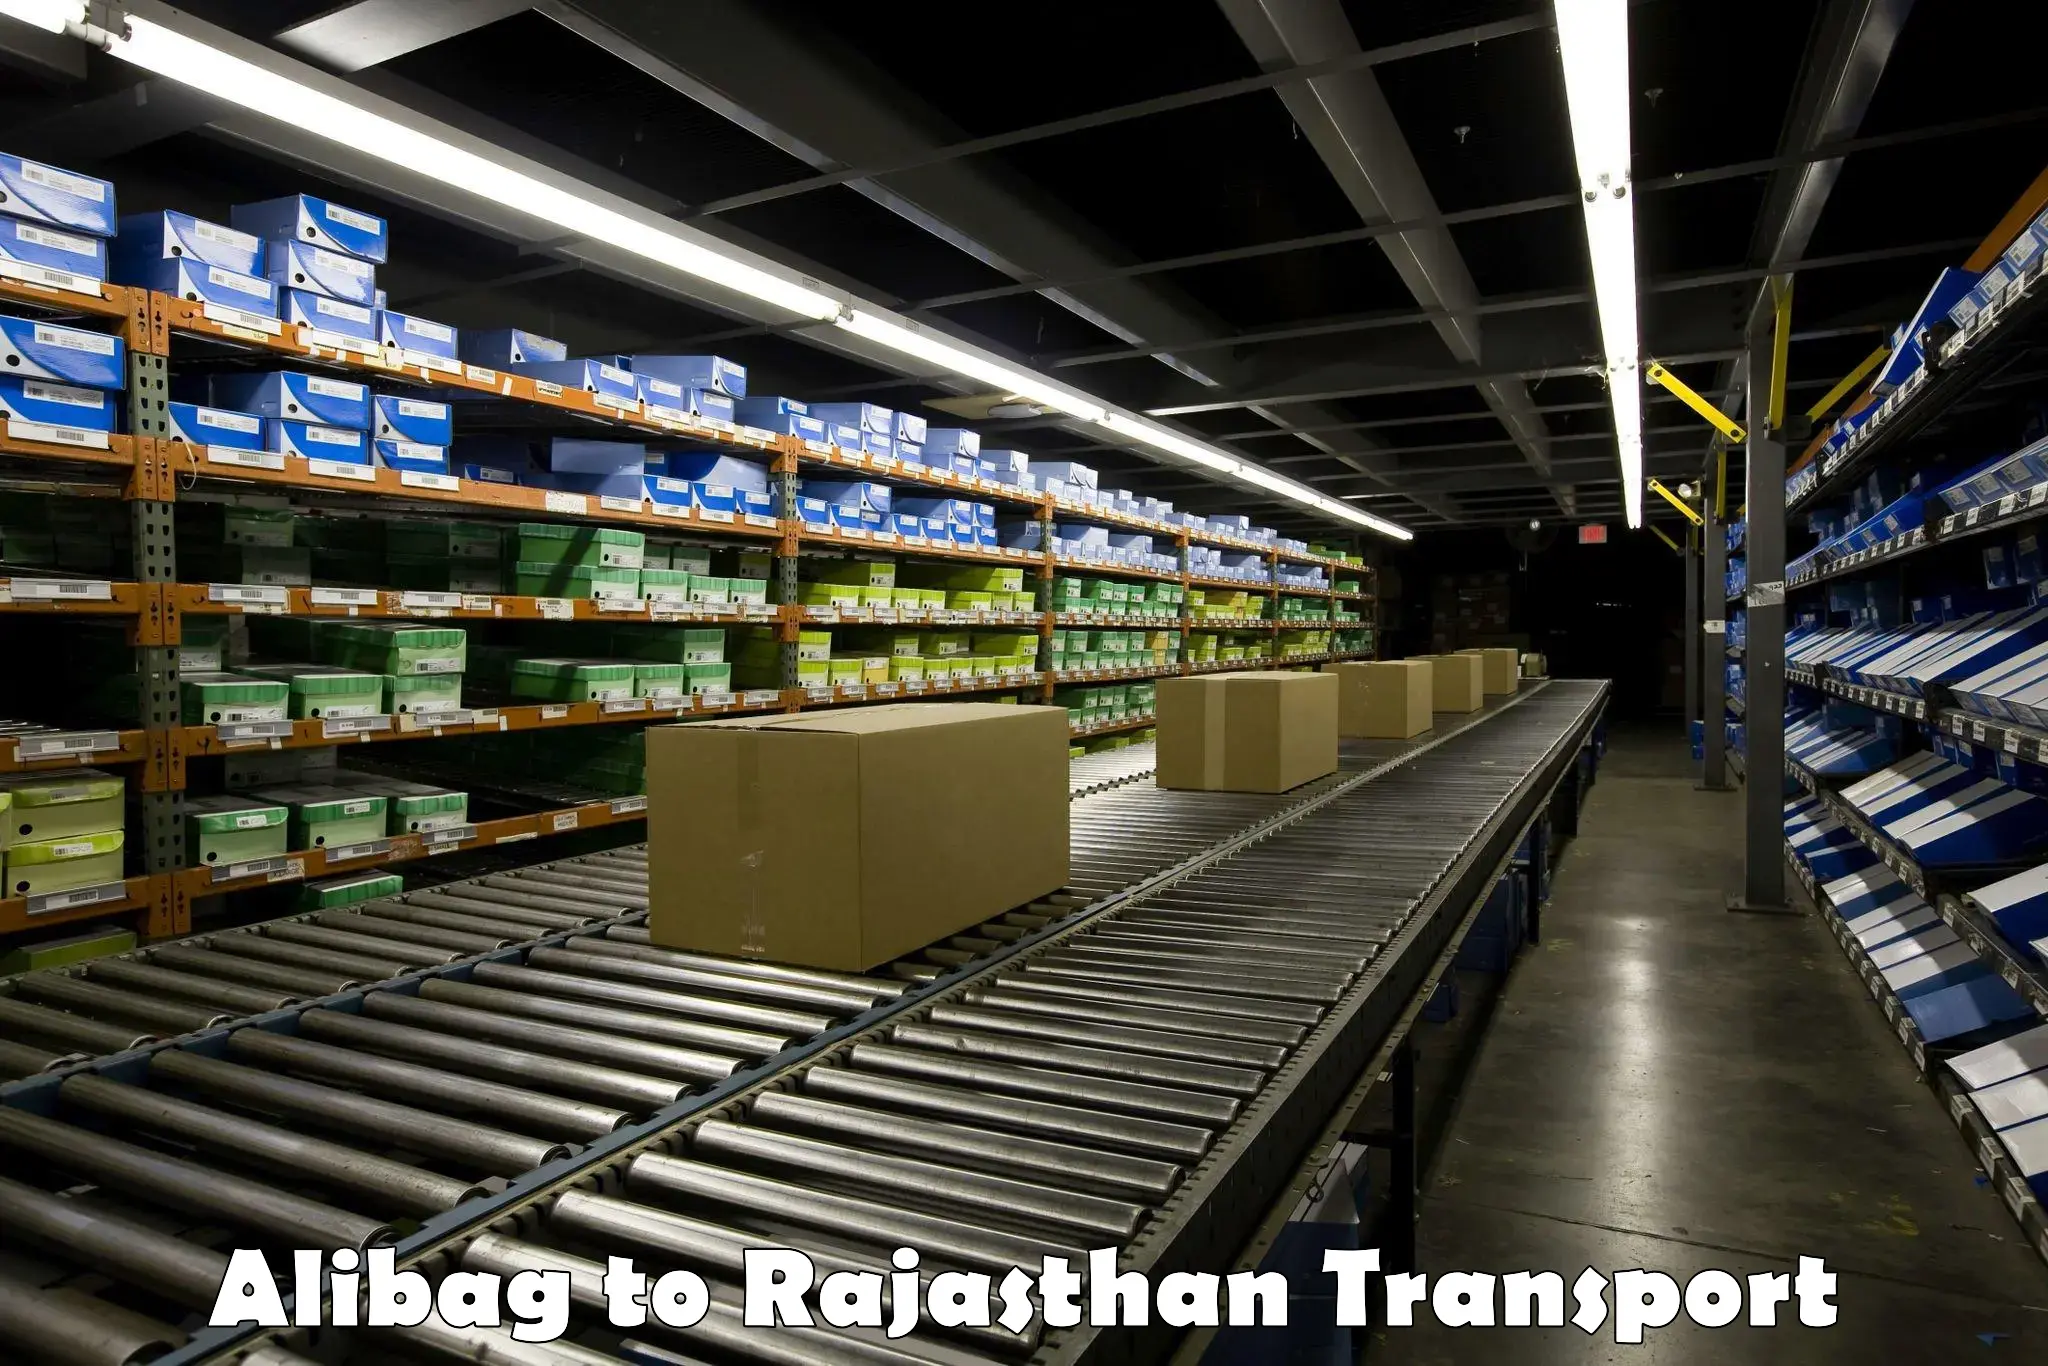 Pick up transport service Alibag to Rajasthan